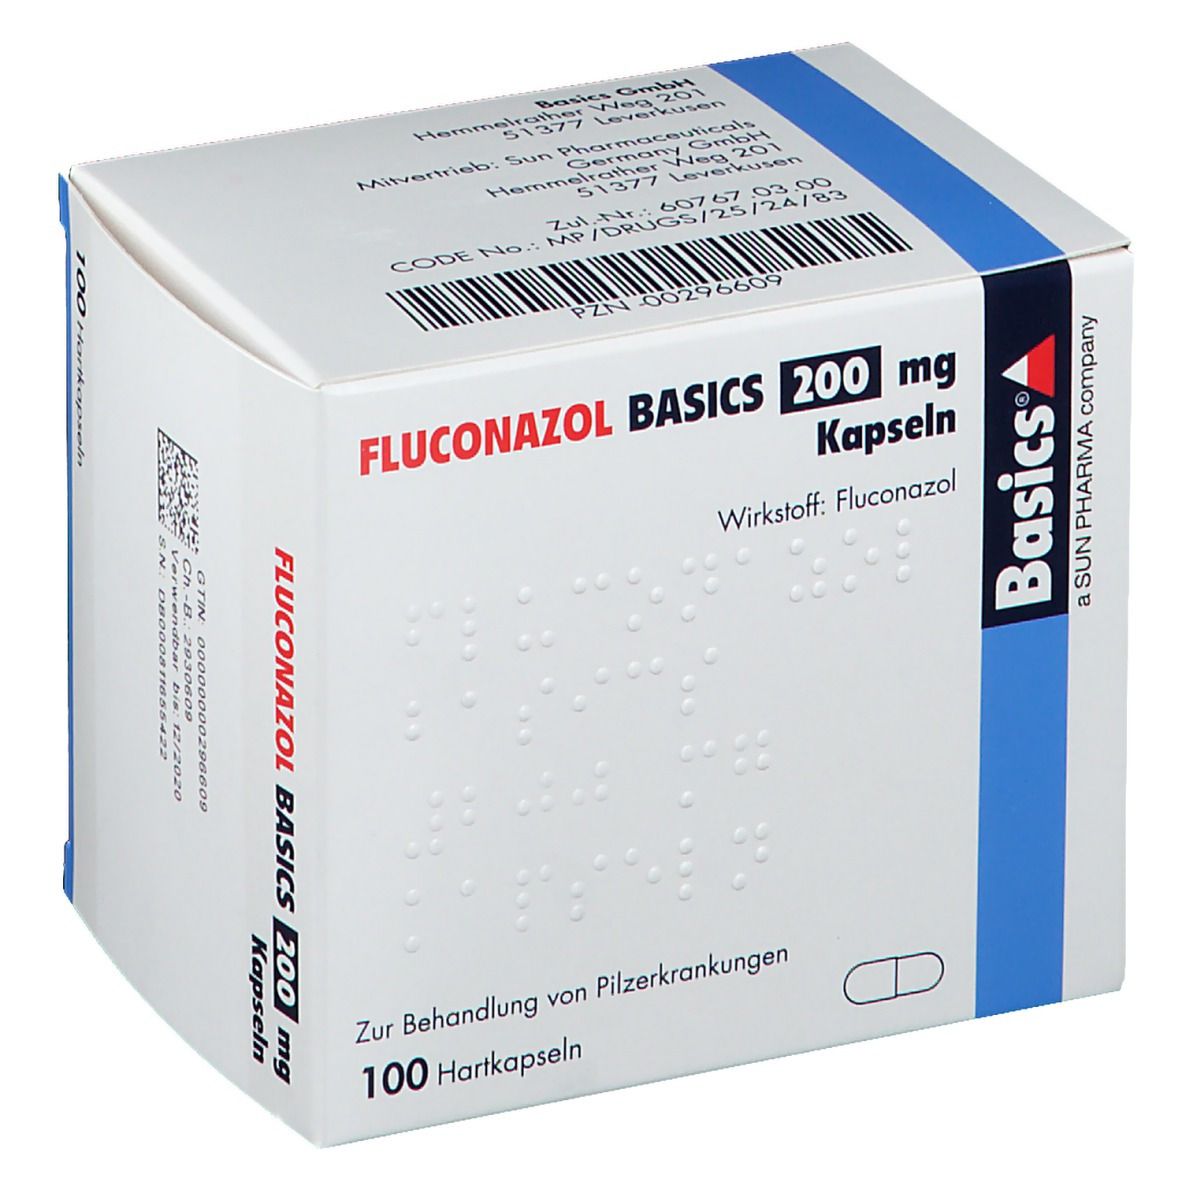 FLUCONAZOL BASICS 200 mg